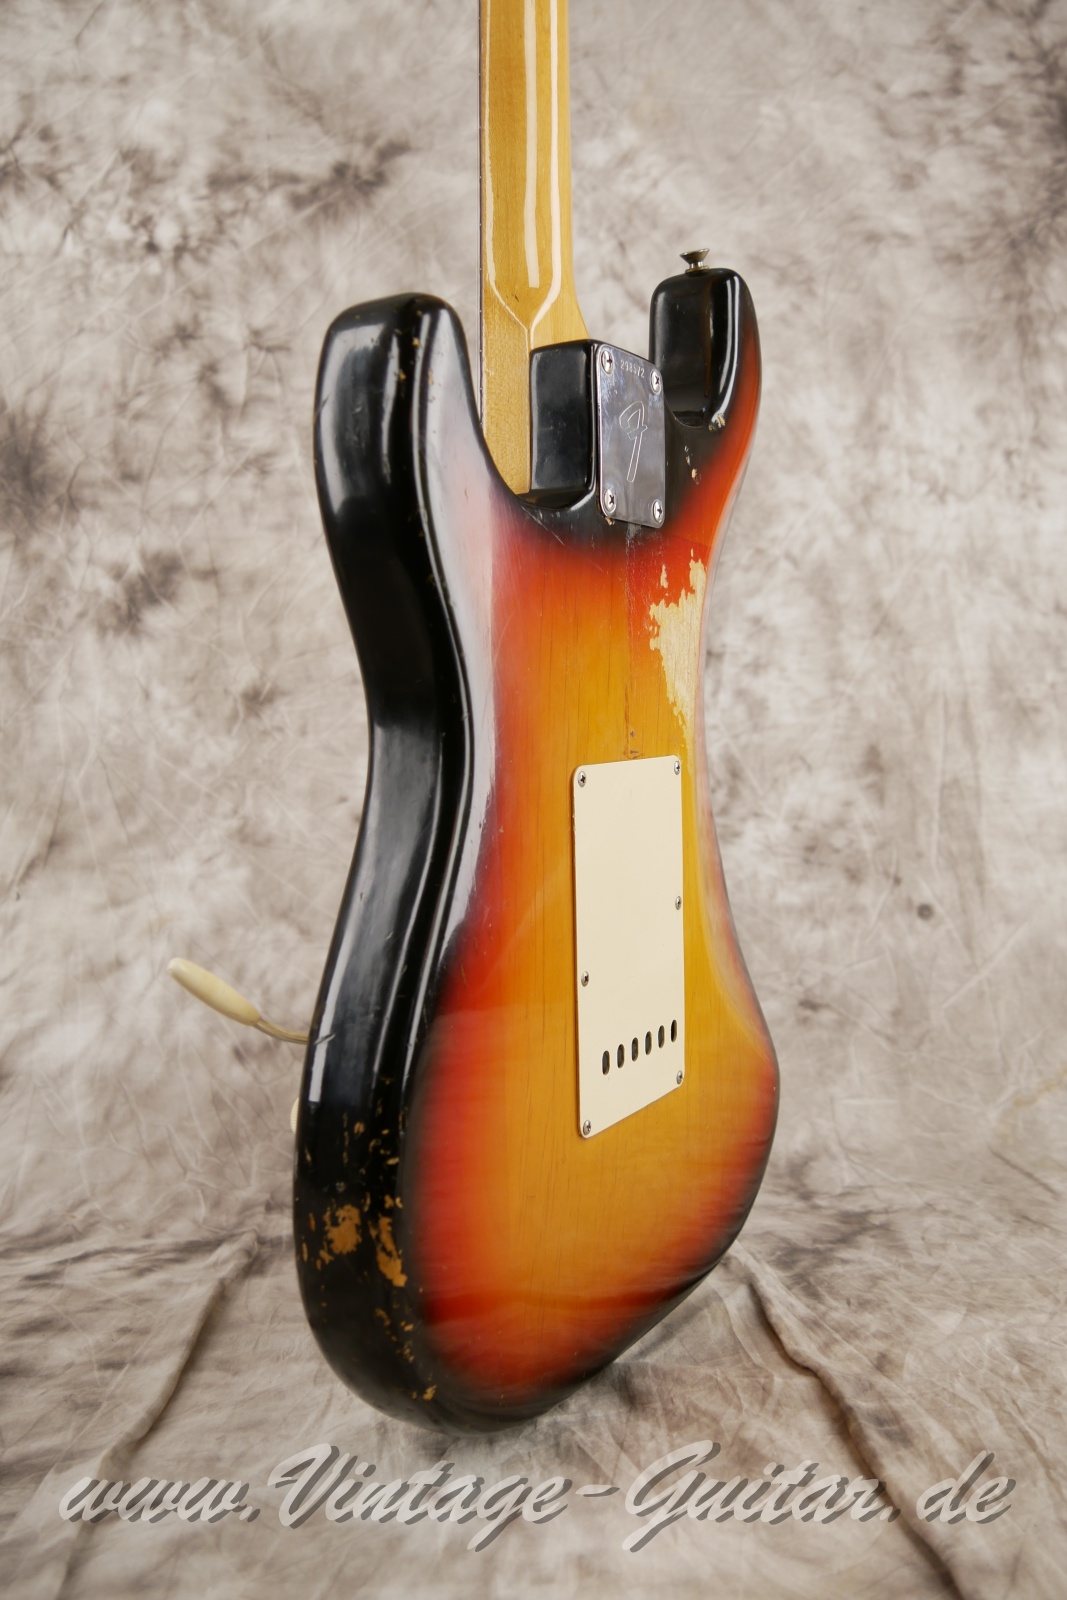 Fender_Stratocaster_sunburst_4hole_1971-011.JPG